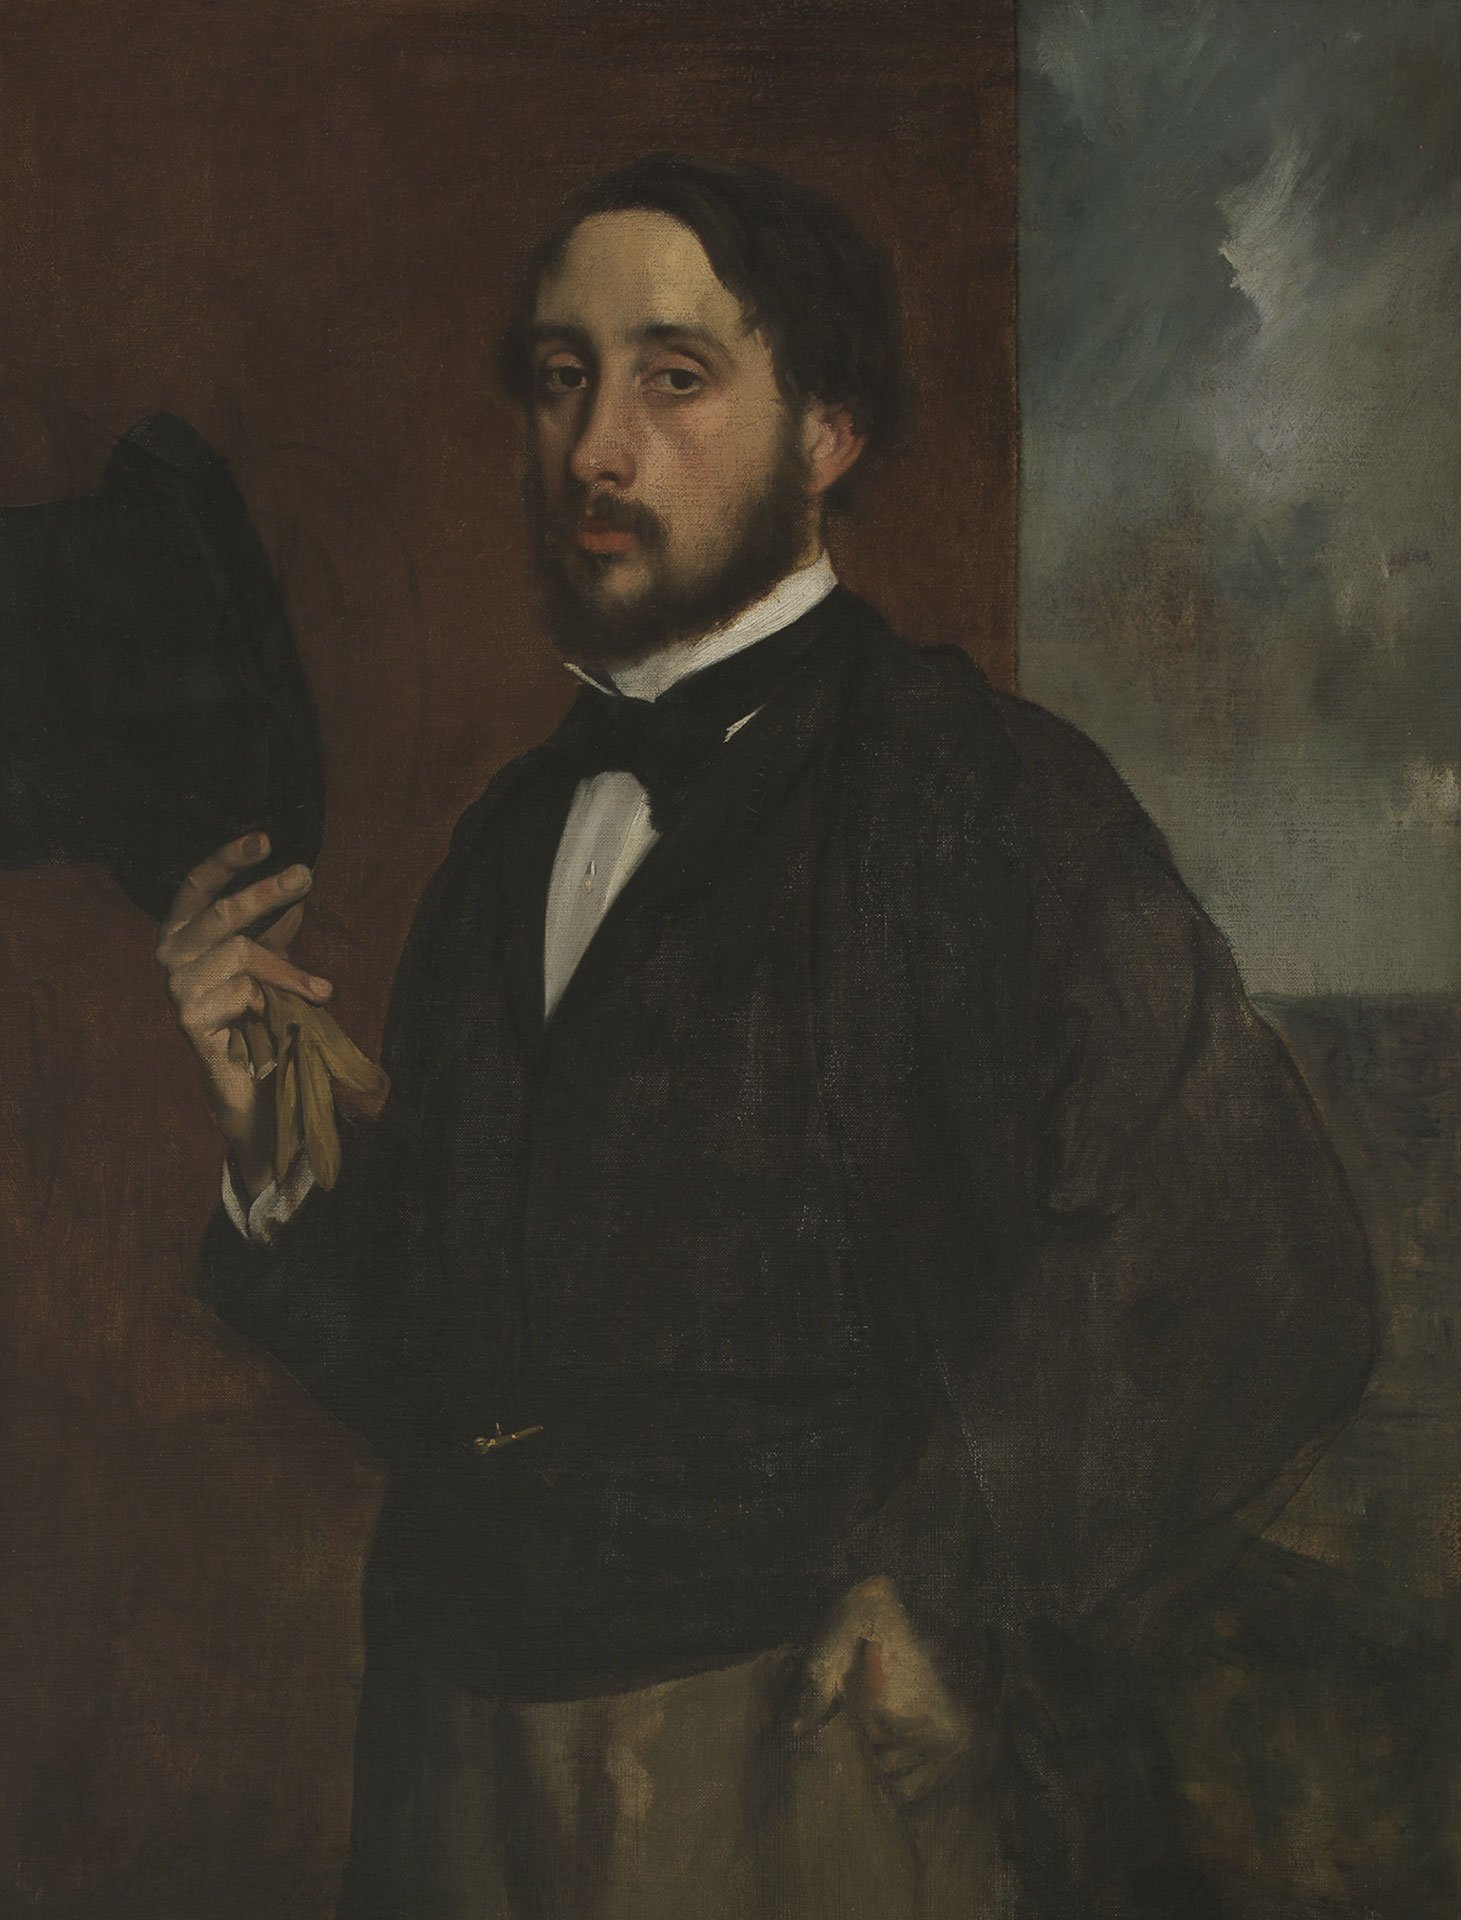 Zu sehen ist ein Selbstportrait des Künstlers Edgar Degas. Er hält in seiner rechten Hand einen Hut.